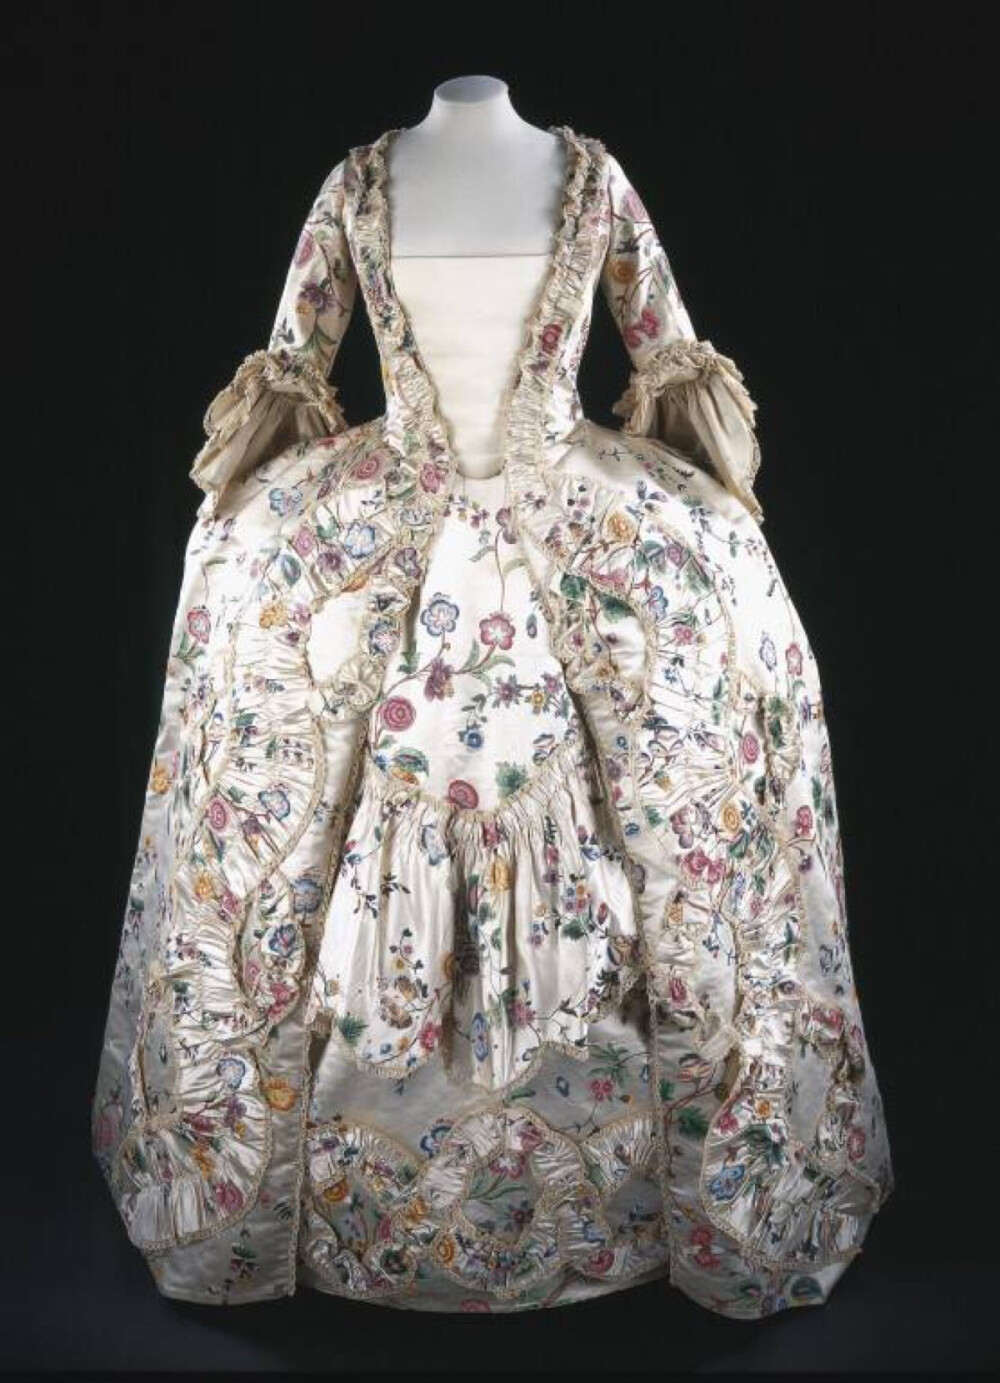 法式女袍，1760s，英国，V&A博物馆。通体用中国出口的外销手绘丝绸制成，所以近看花纹很有老外所崇尚的那种“东方”风味~